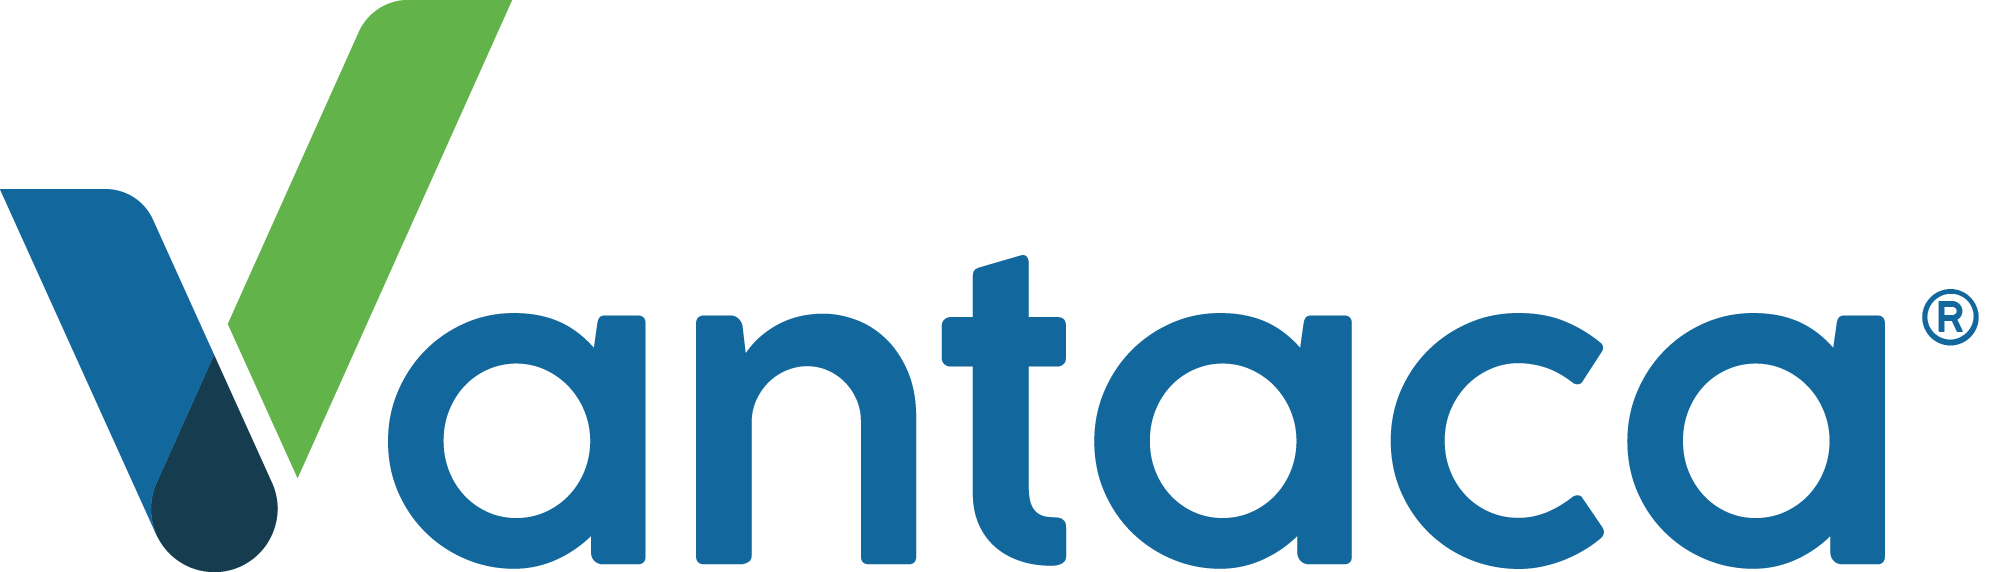 Vantaca Logo